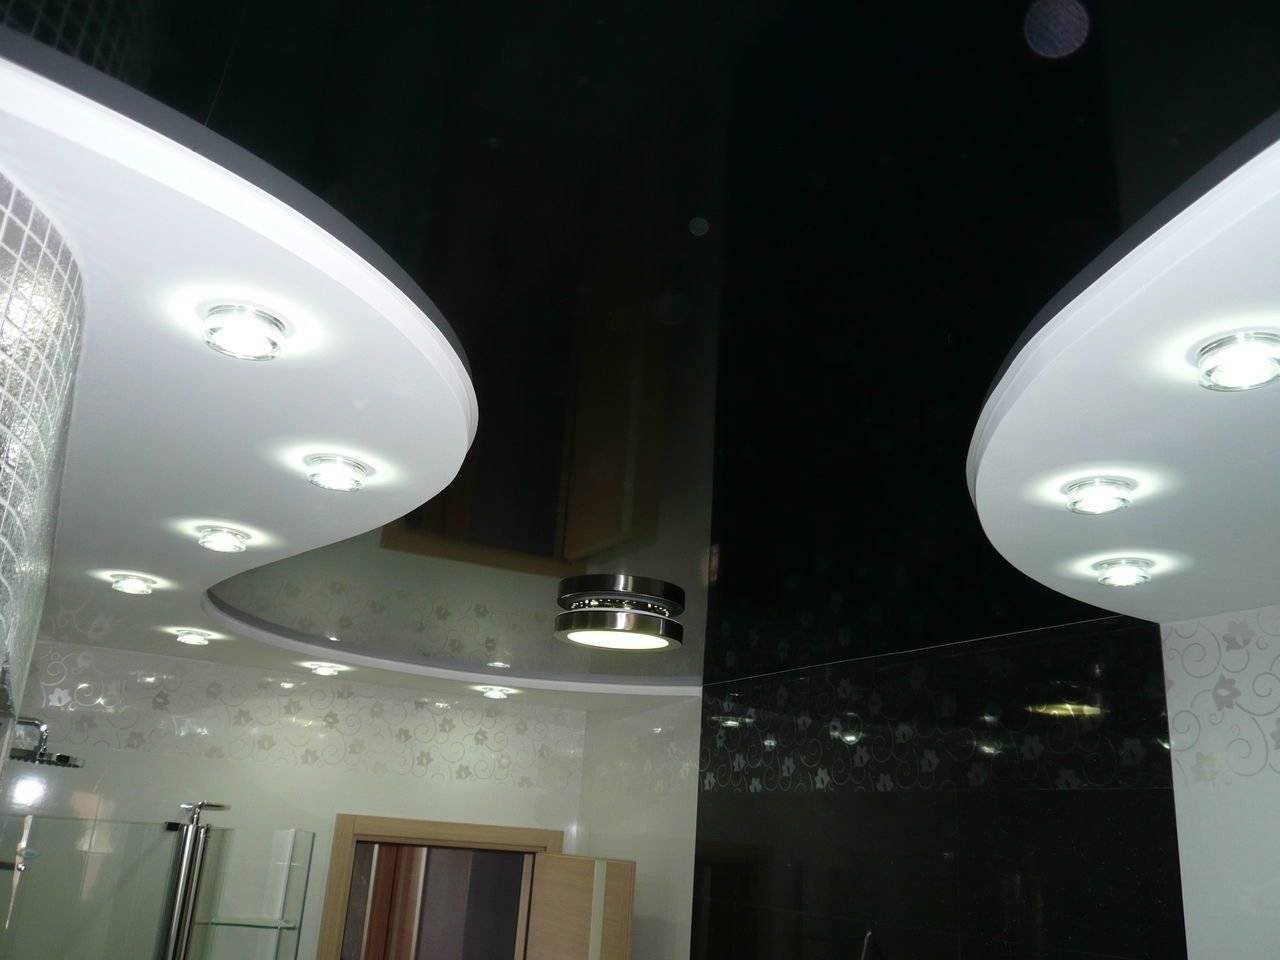 Двухуровневые потолки из гипсокартона для гостиной своими руками: фото дизайна потолков, пошаговая инструкция по монтажу двухъярусных потолков с подсветкой